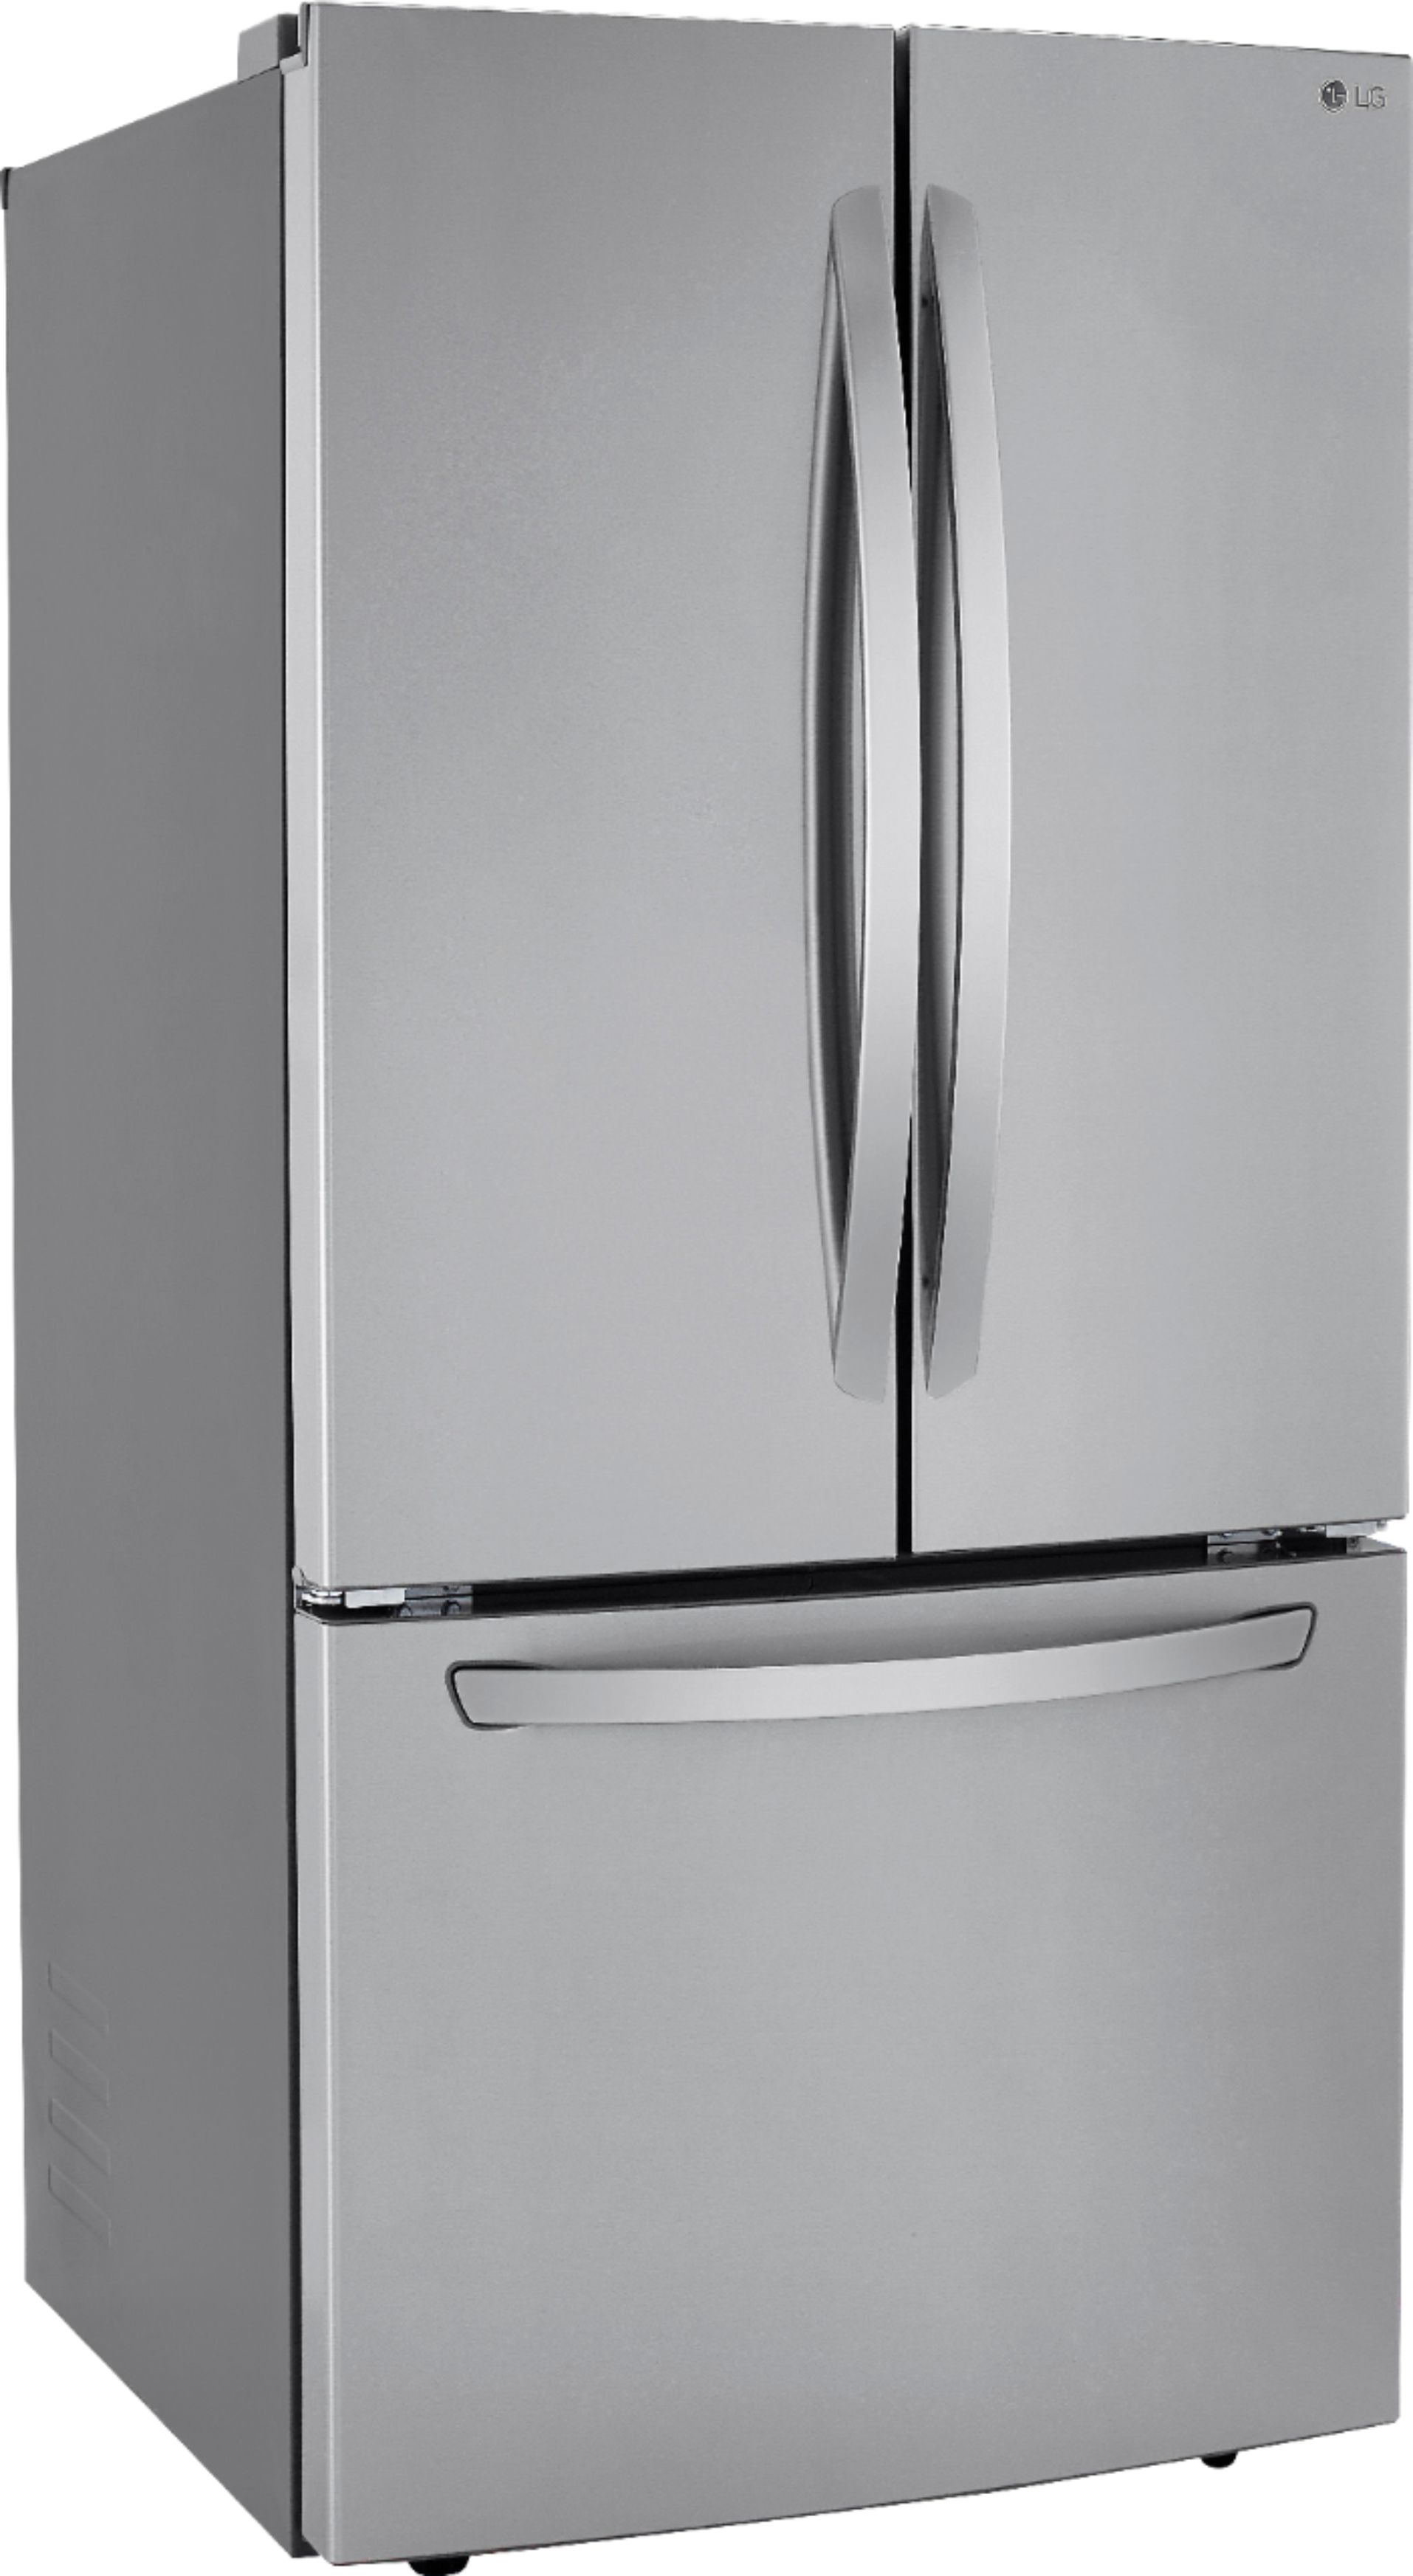 LG DoorinDoor 29.9 Cu. Ft. 4Door French Door Refrigerator with ThrutheDoor Ice and Water